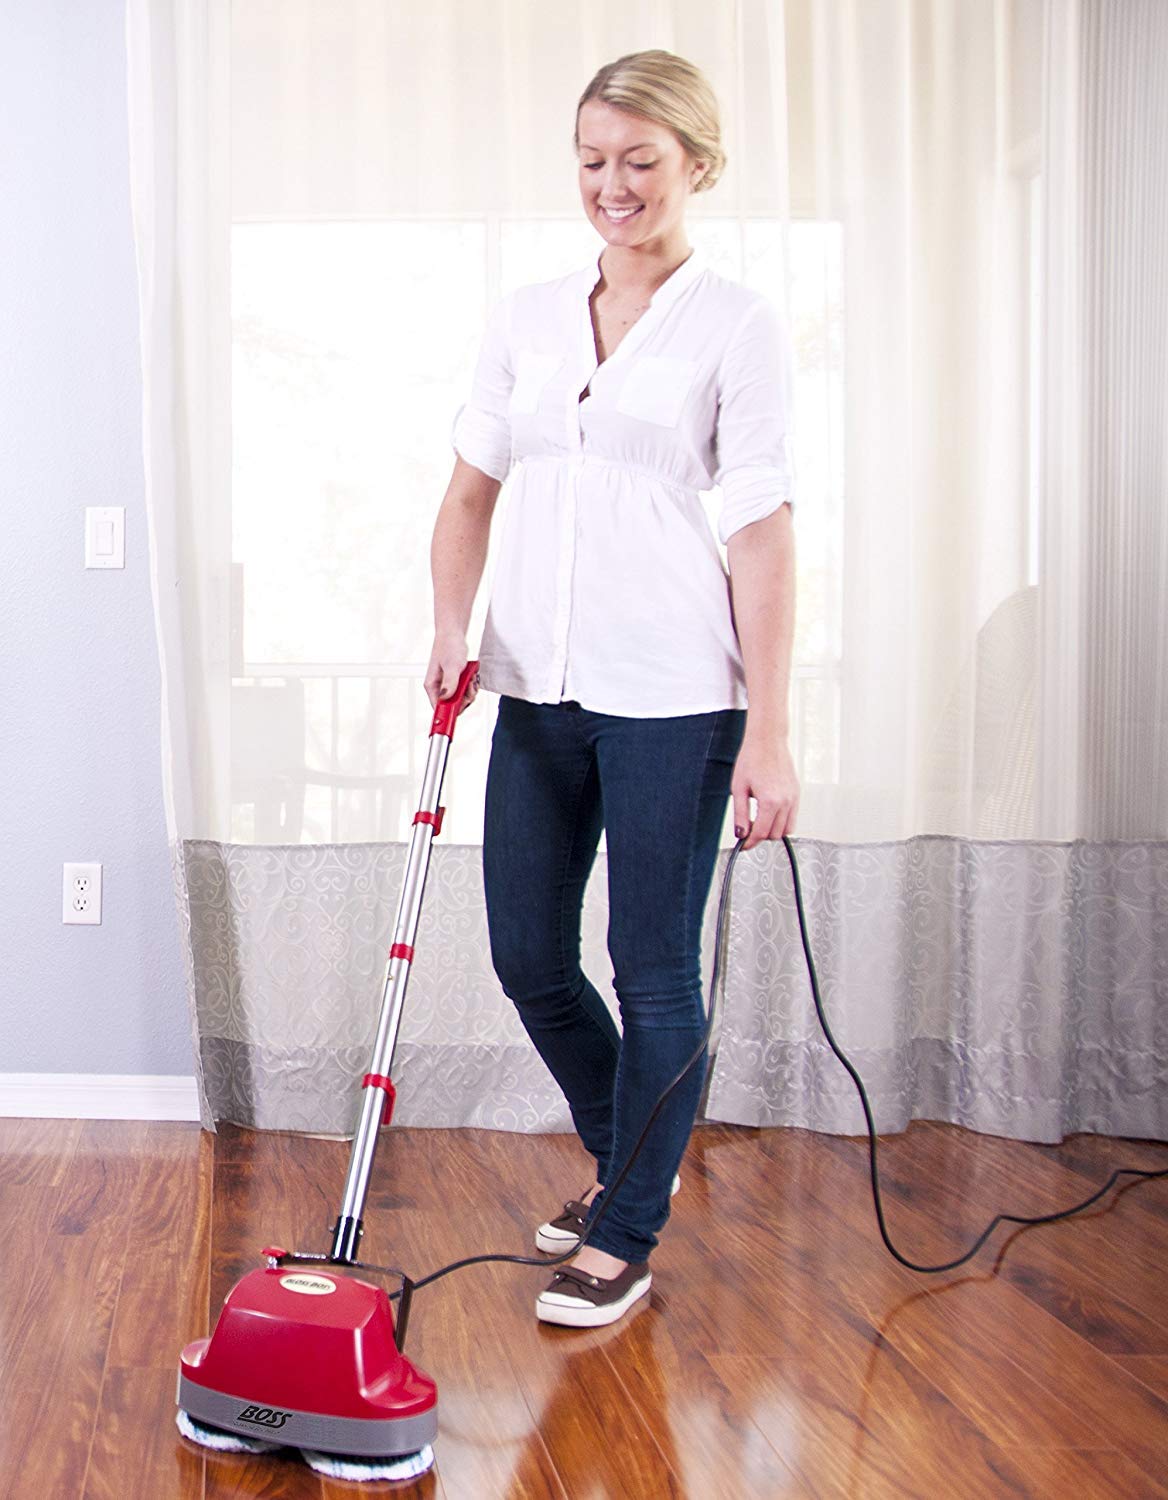 Top 10 Best Floor Scrubbers Review 2021, Best Hardwood Floor Cleaning Machines Vacuums